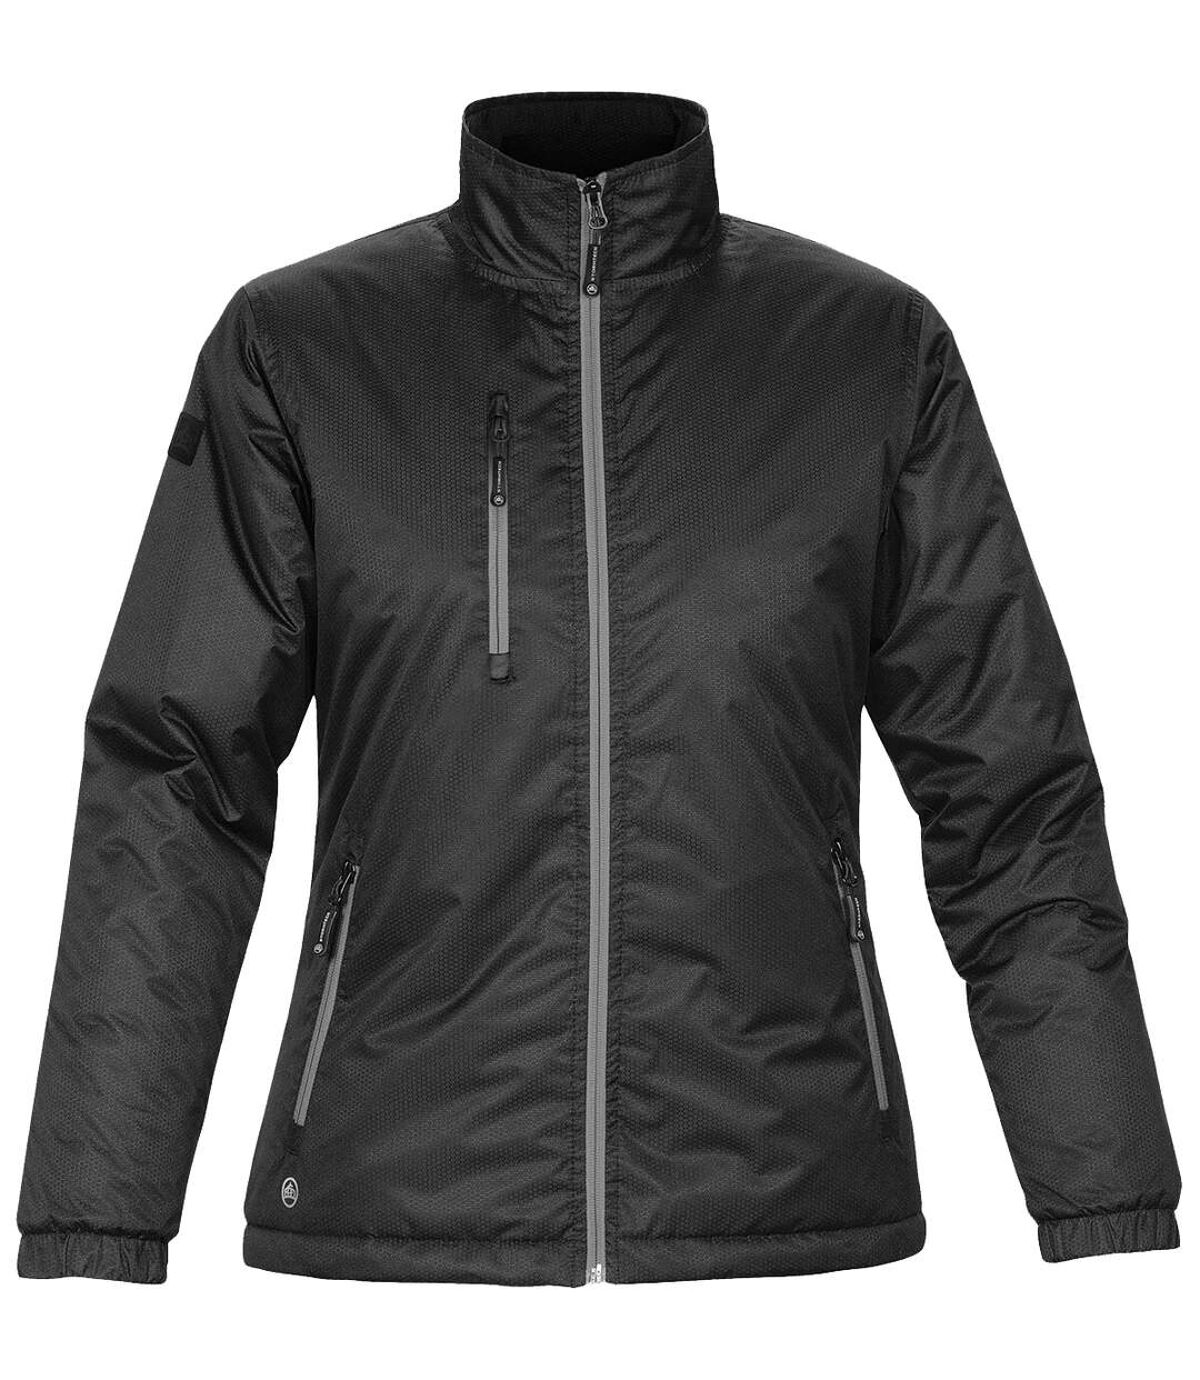 Stormtech Ladies/Womens Axis Water Resistant Jacket (Black/Black) - UTBC2080